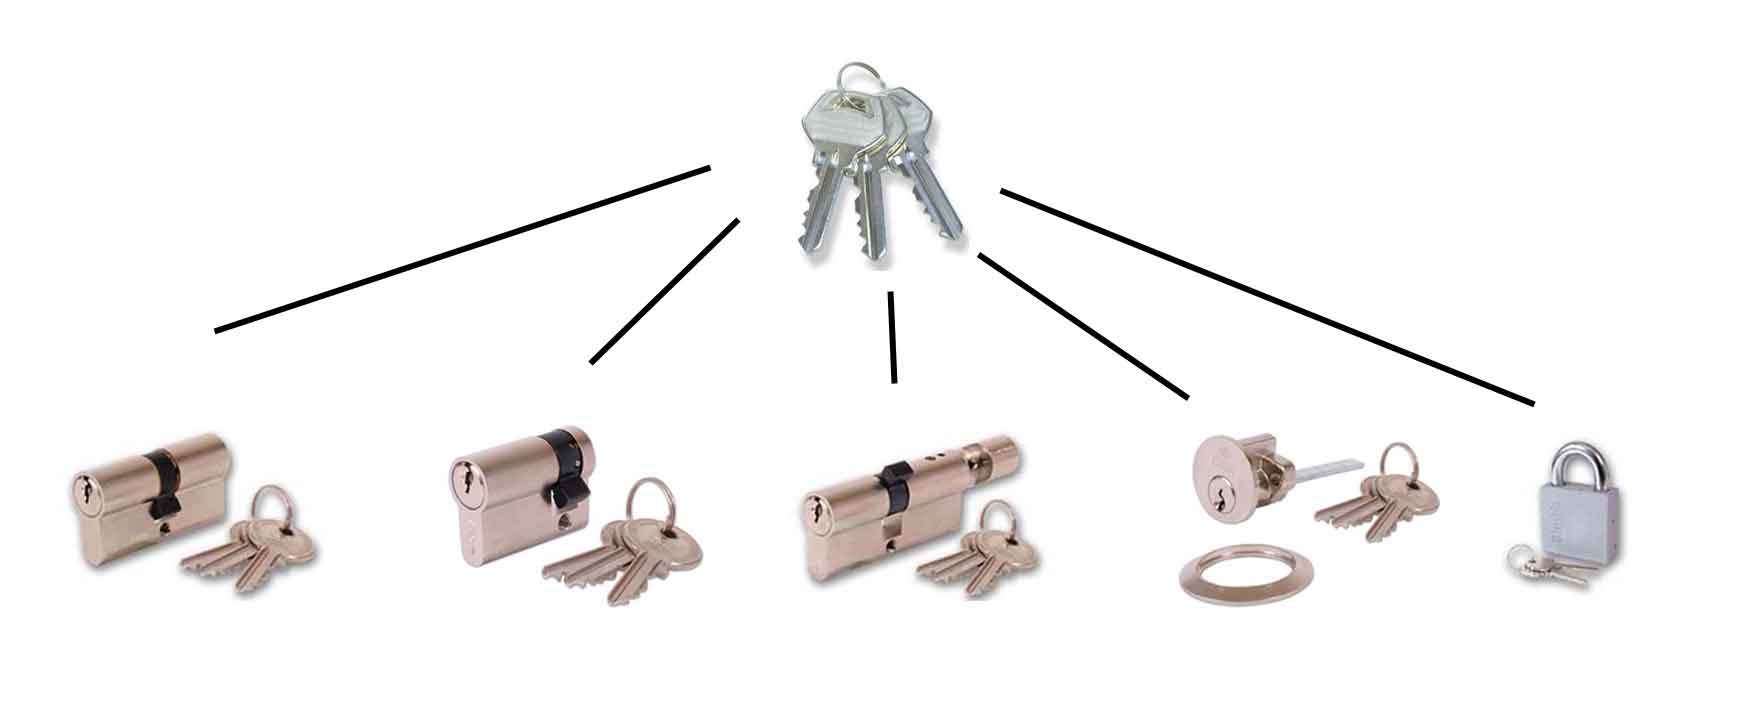 Key Alike Lock suite